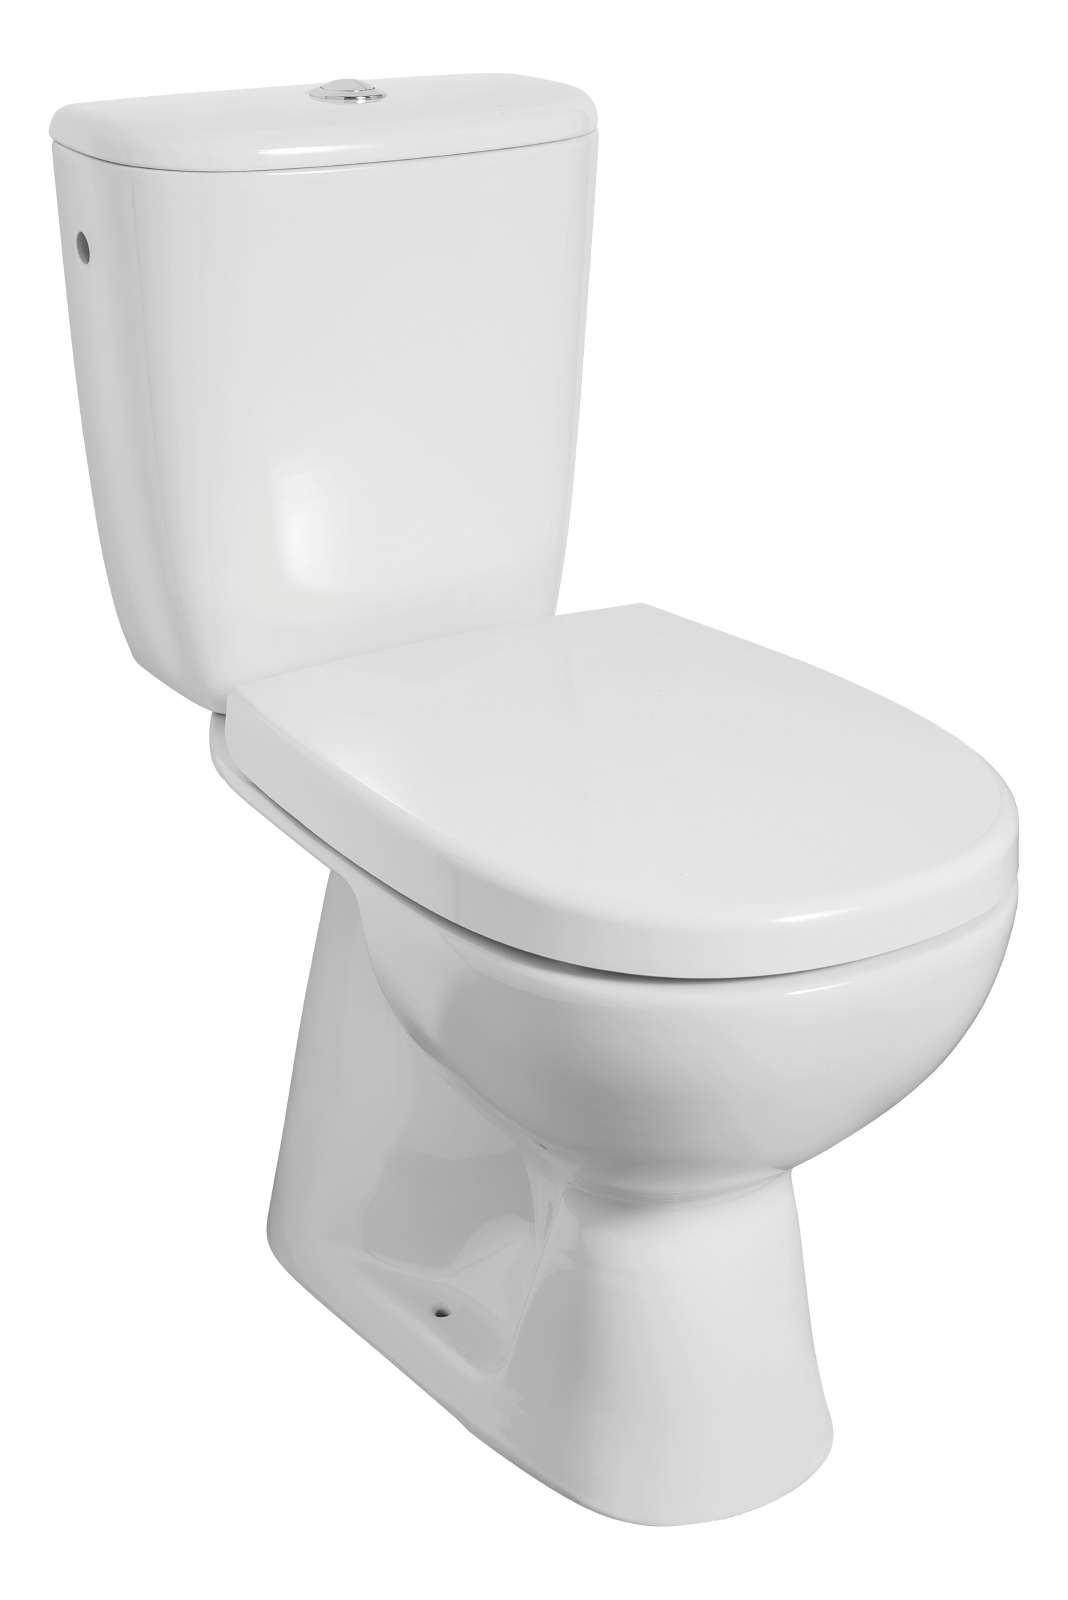 'aquaSu® WC-Kombination Rivera in Weiß, Stand-WC mit WC-Sitz und Spülkasten, Abgang innen senkrecht